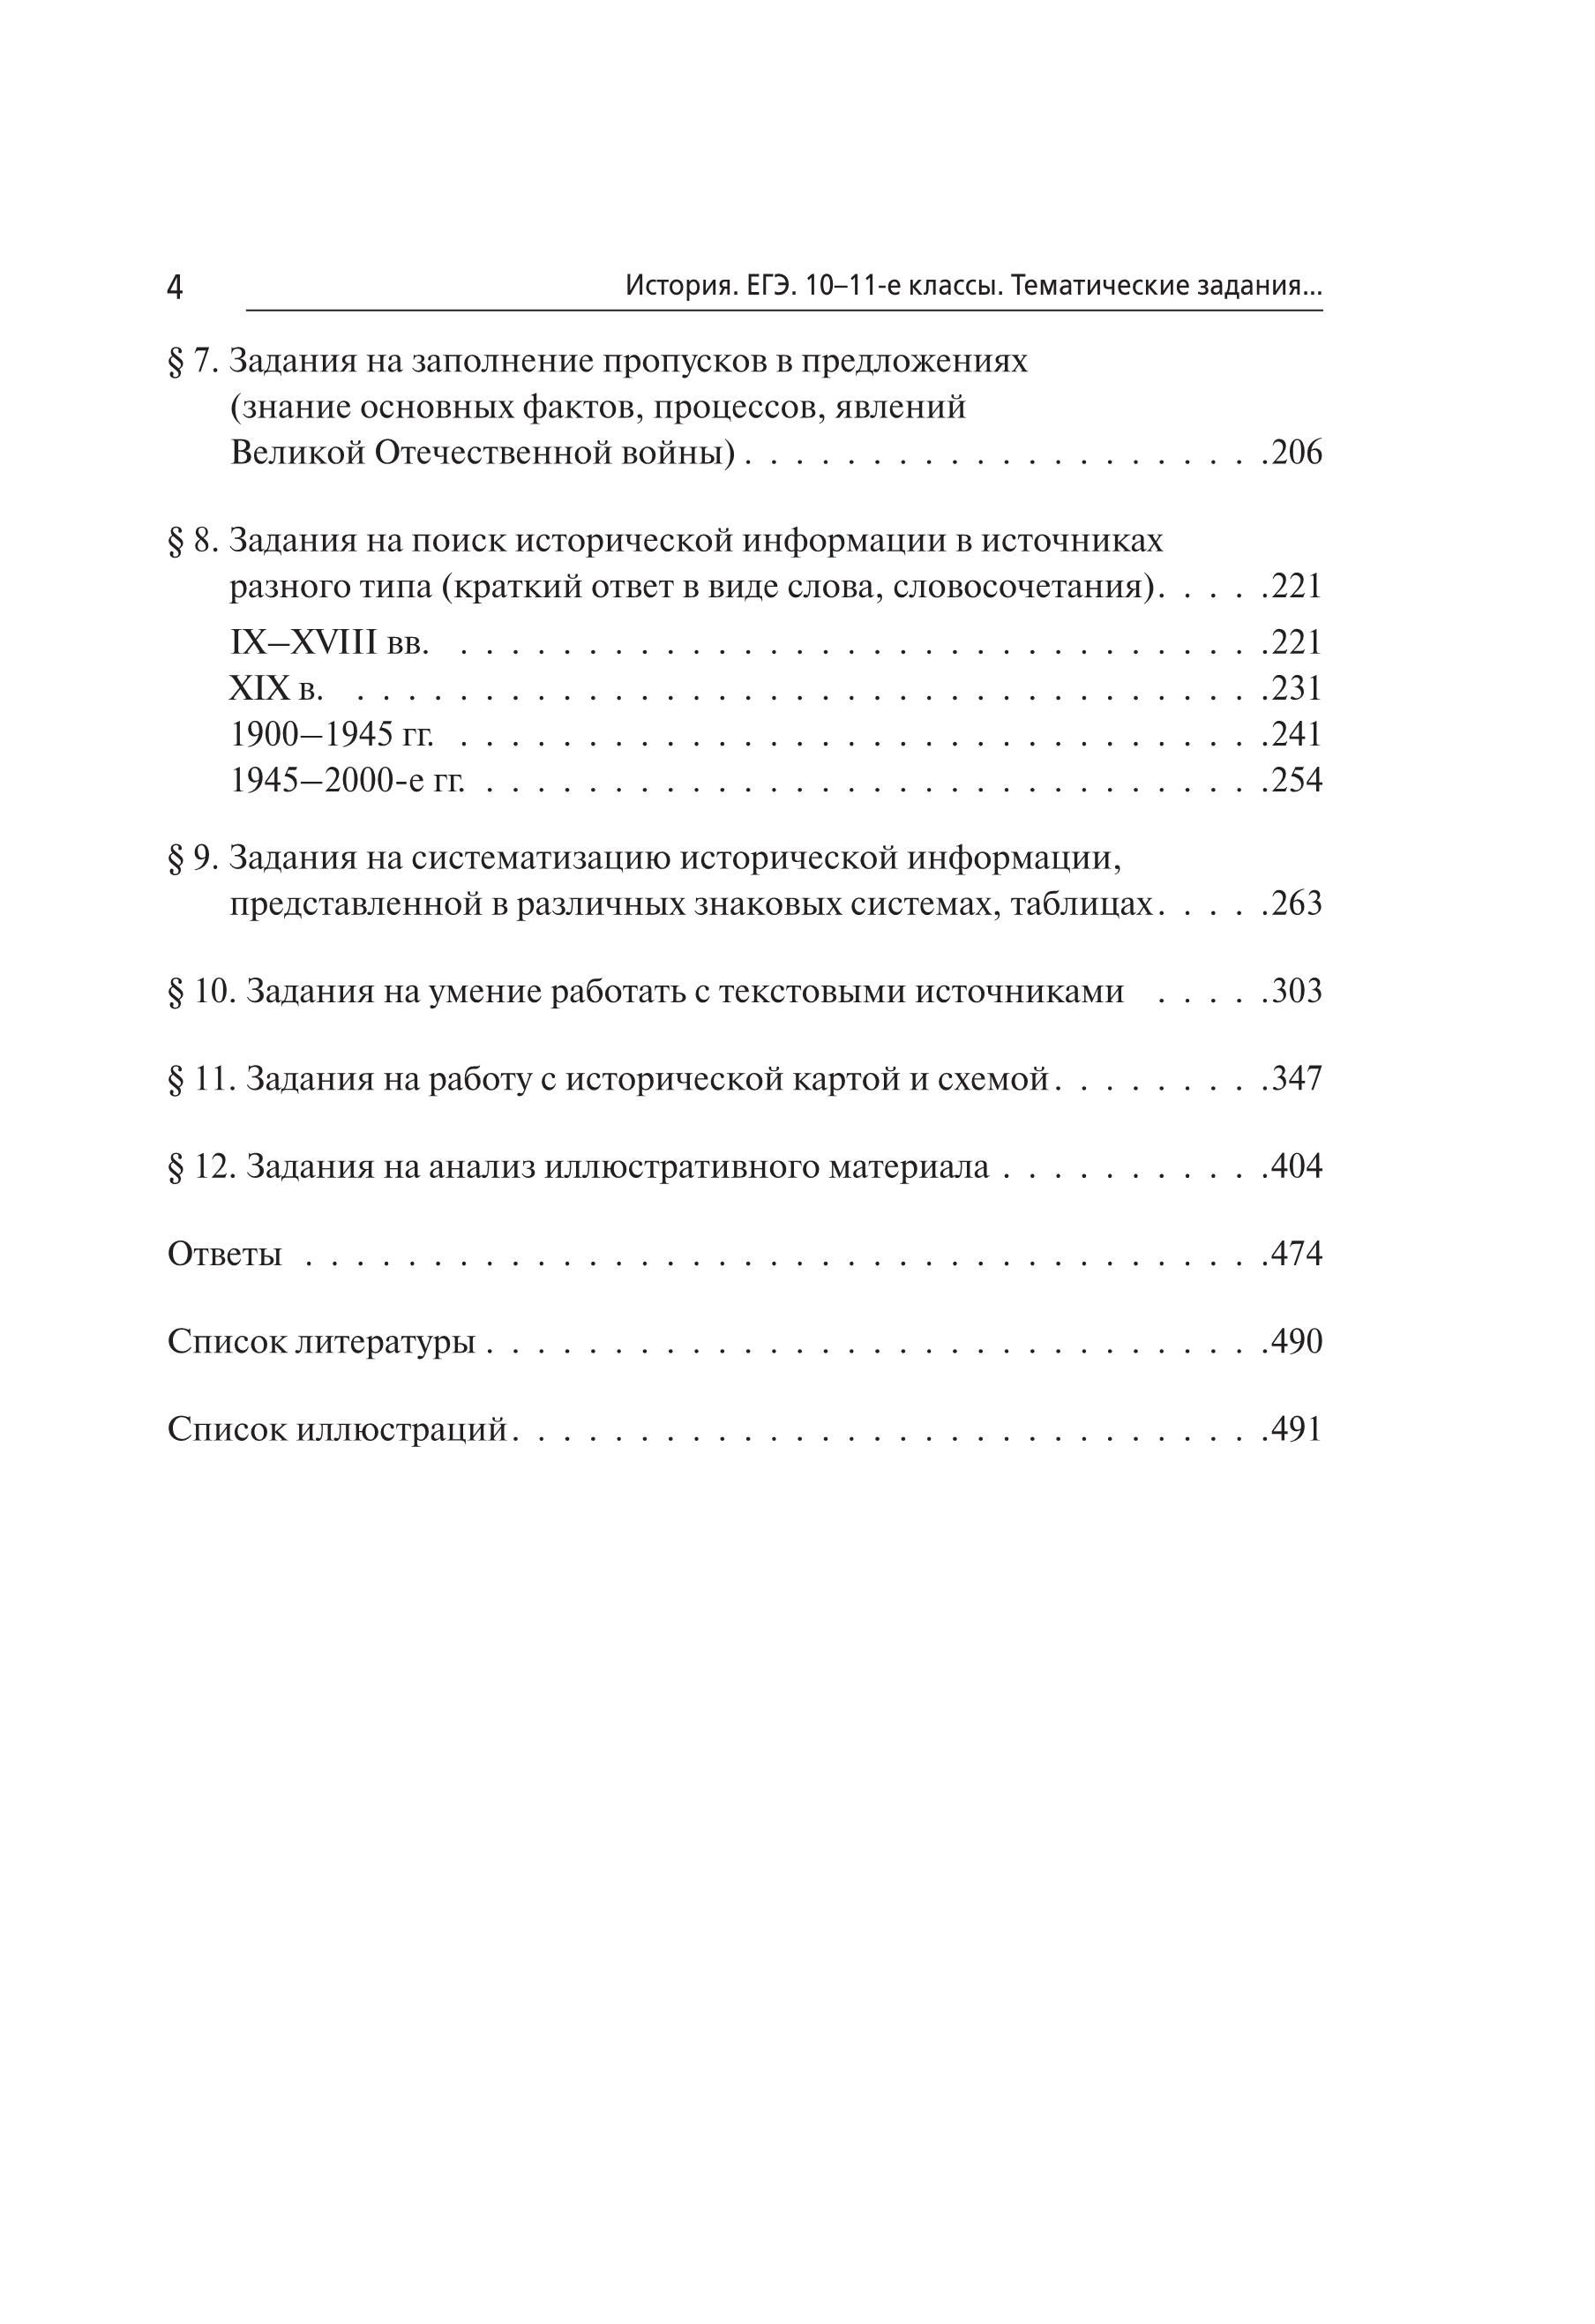 История. ЕГЭ. Тематические задания базового и повышенного уровней сложности. 7-е изд.